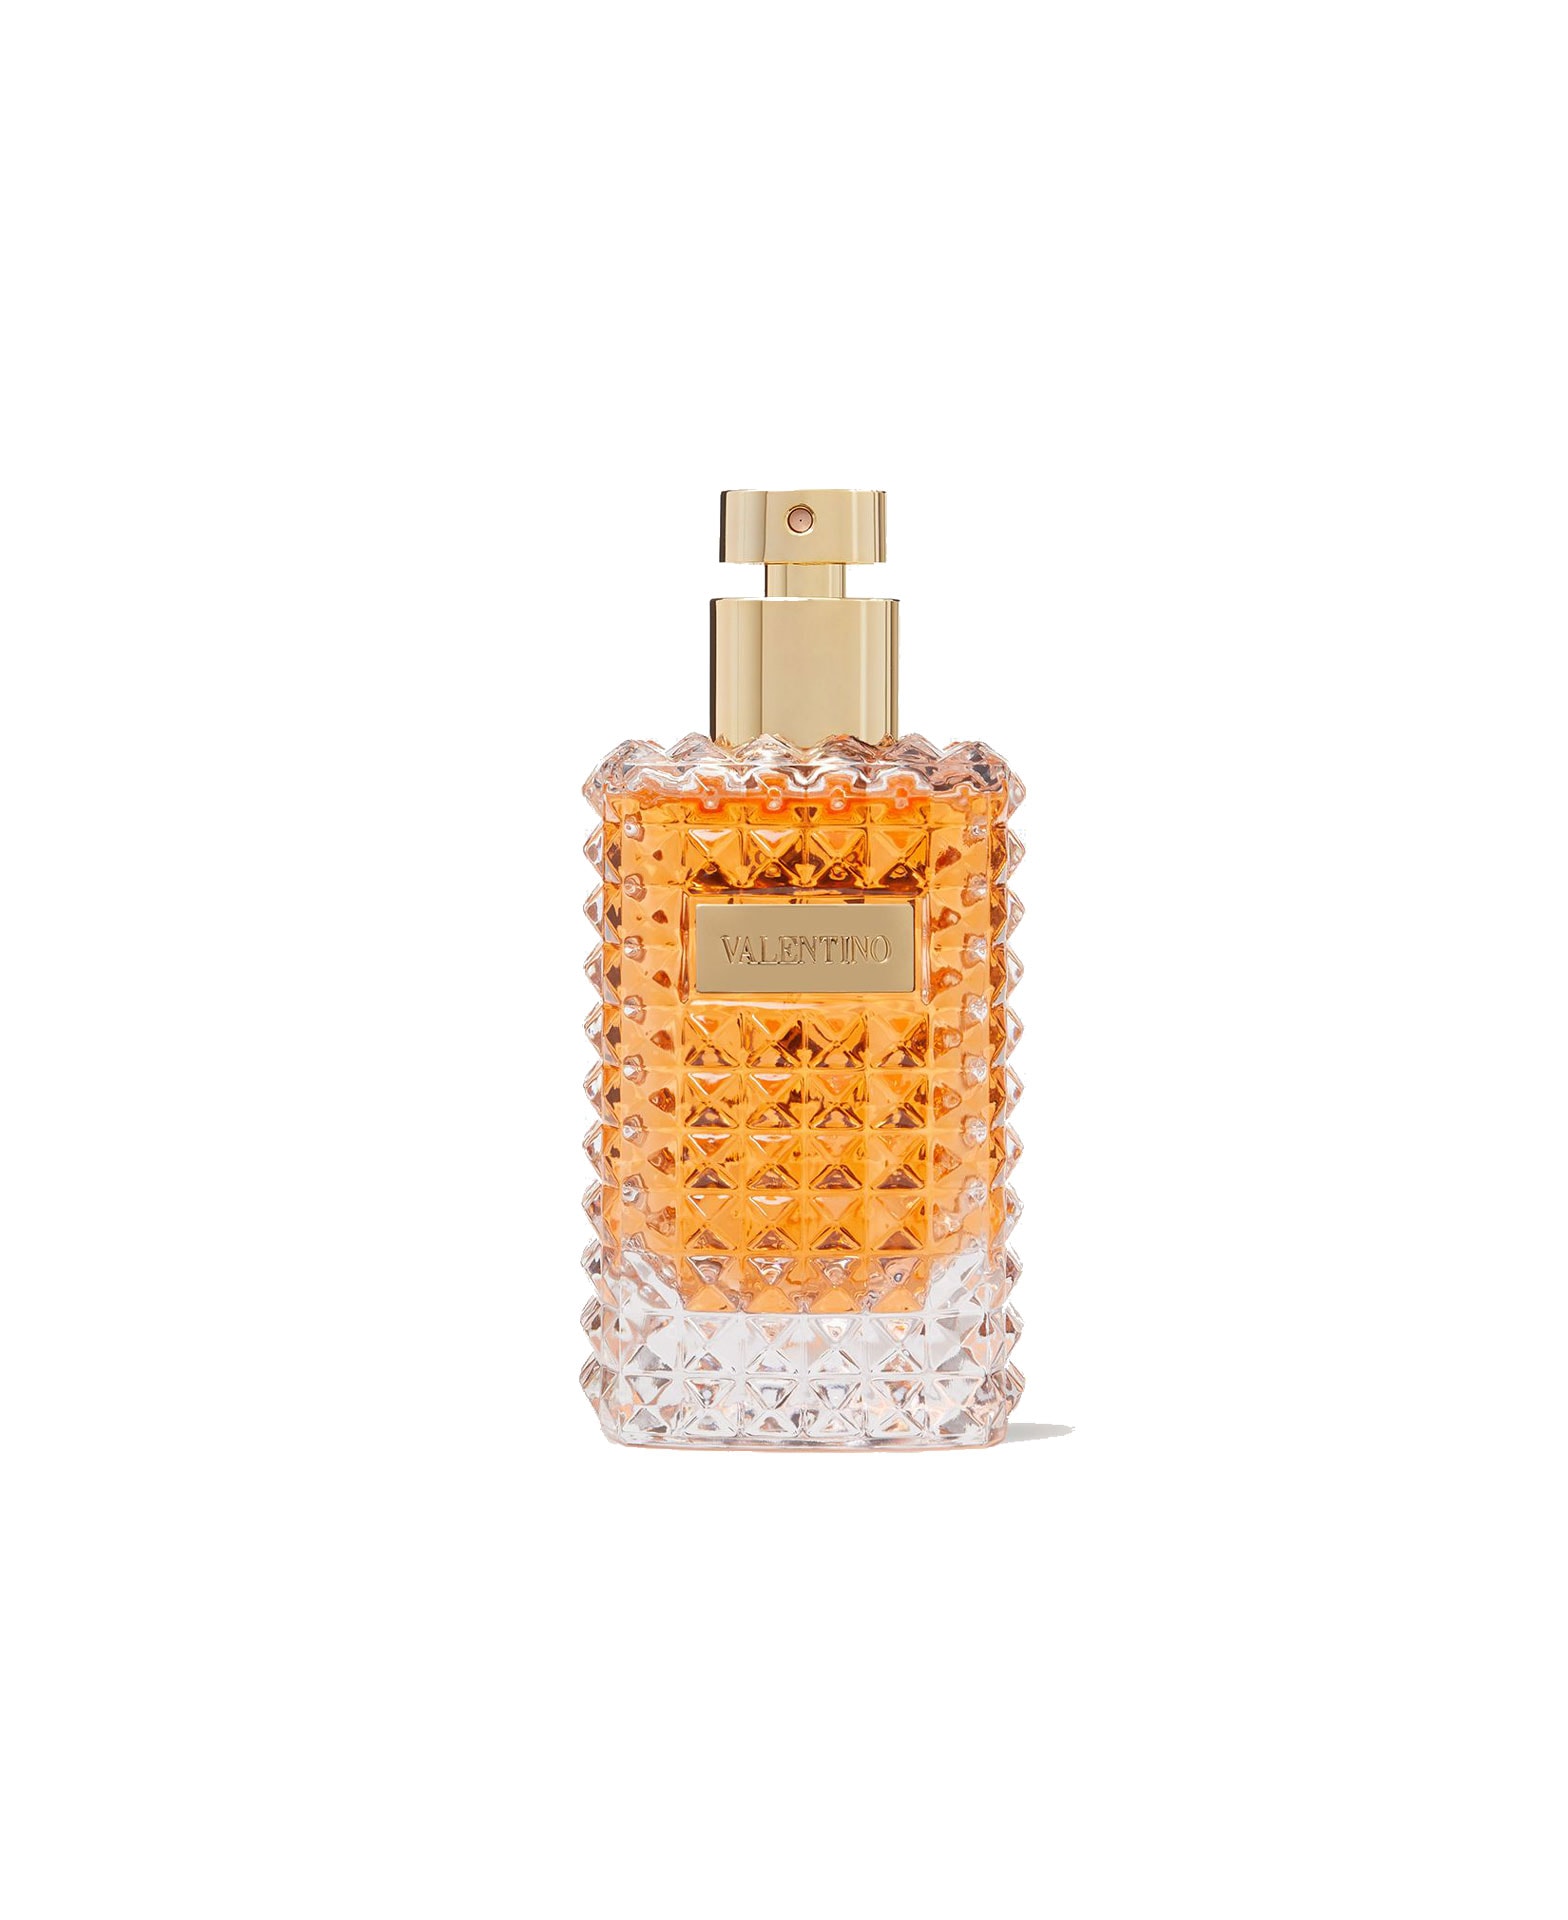 Donna Acqua » Valentino » The Parfumerie Lanka